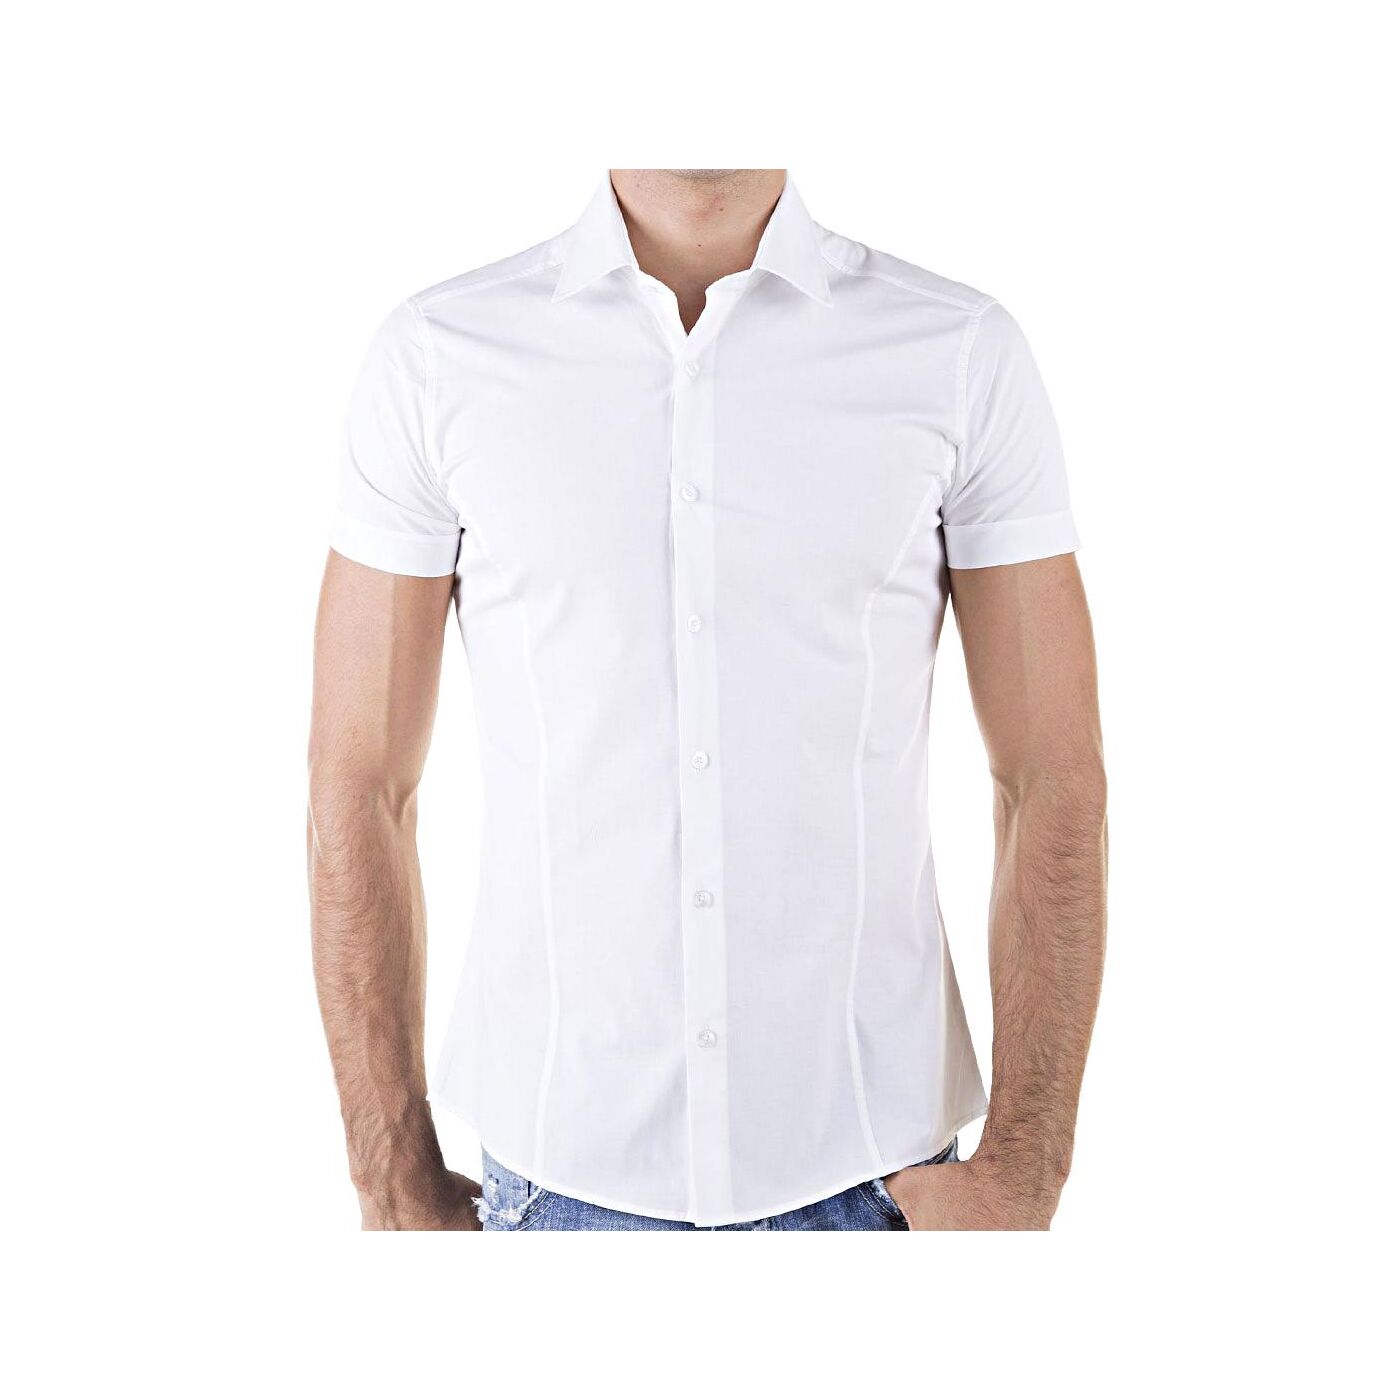 Redbridge basic hemd R-2156-white - Redbridge - Official Online Shop ...